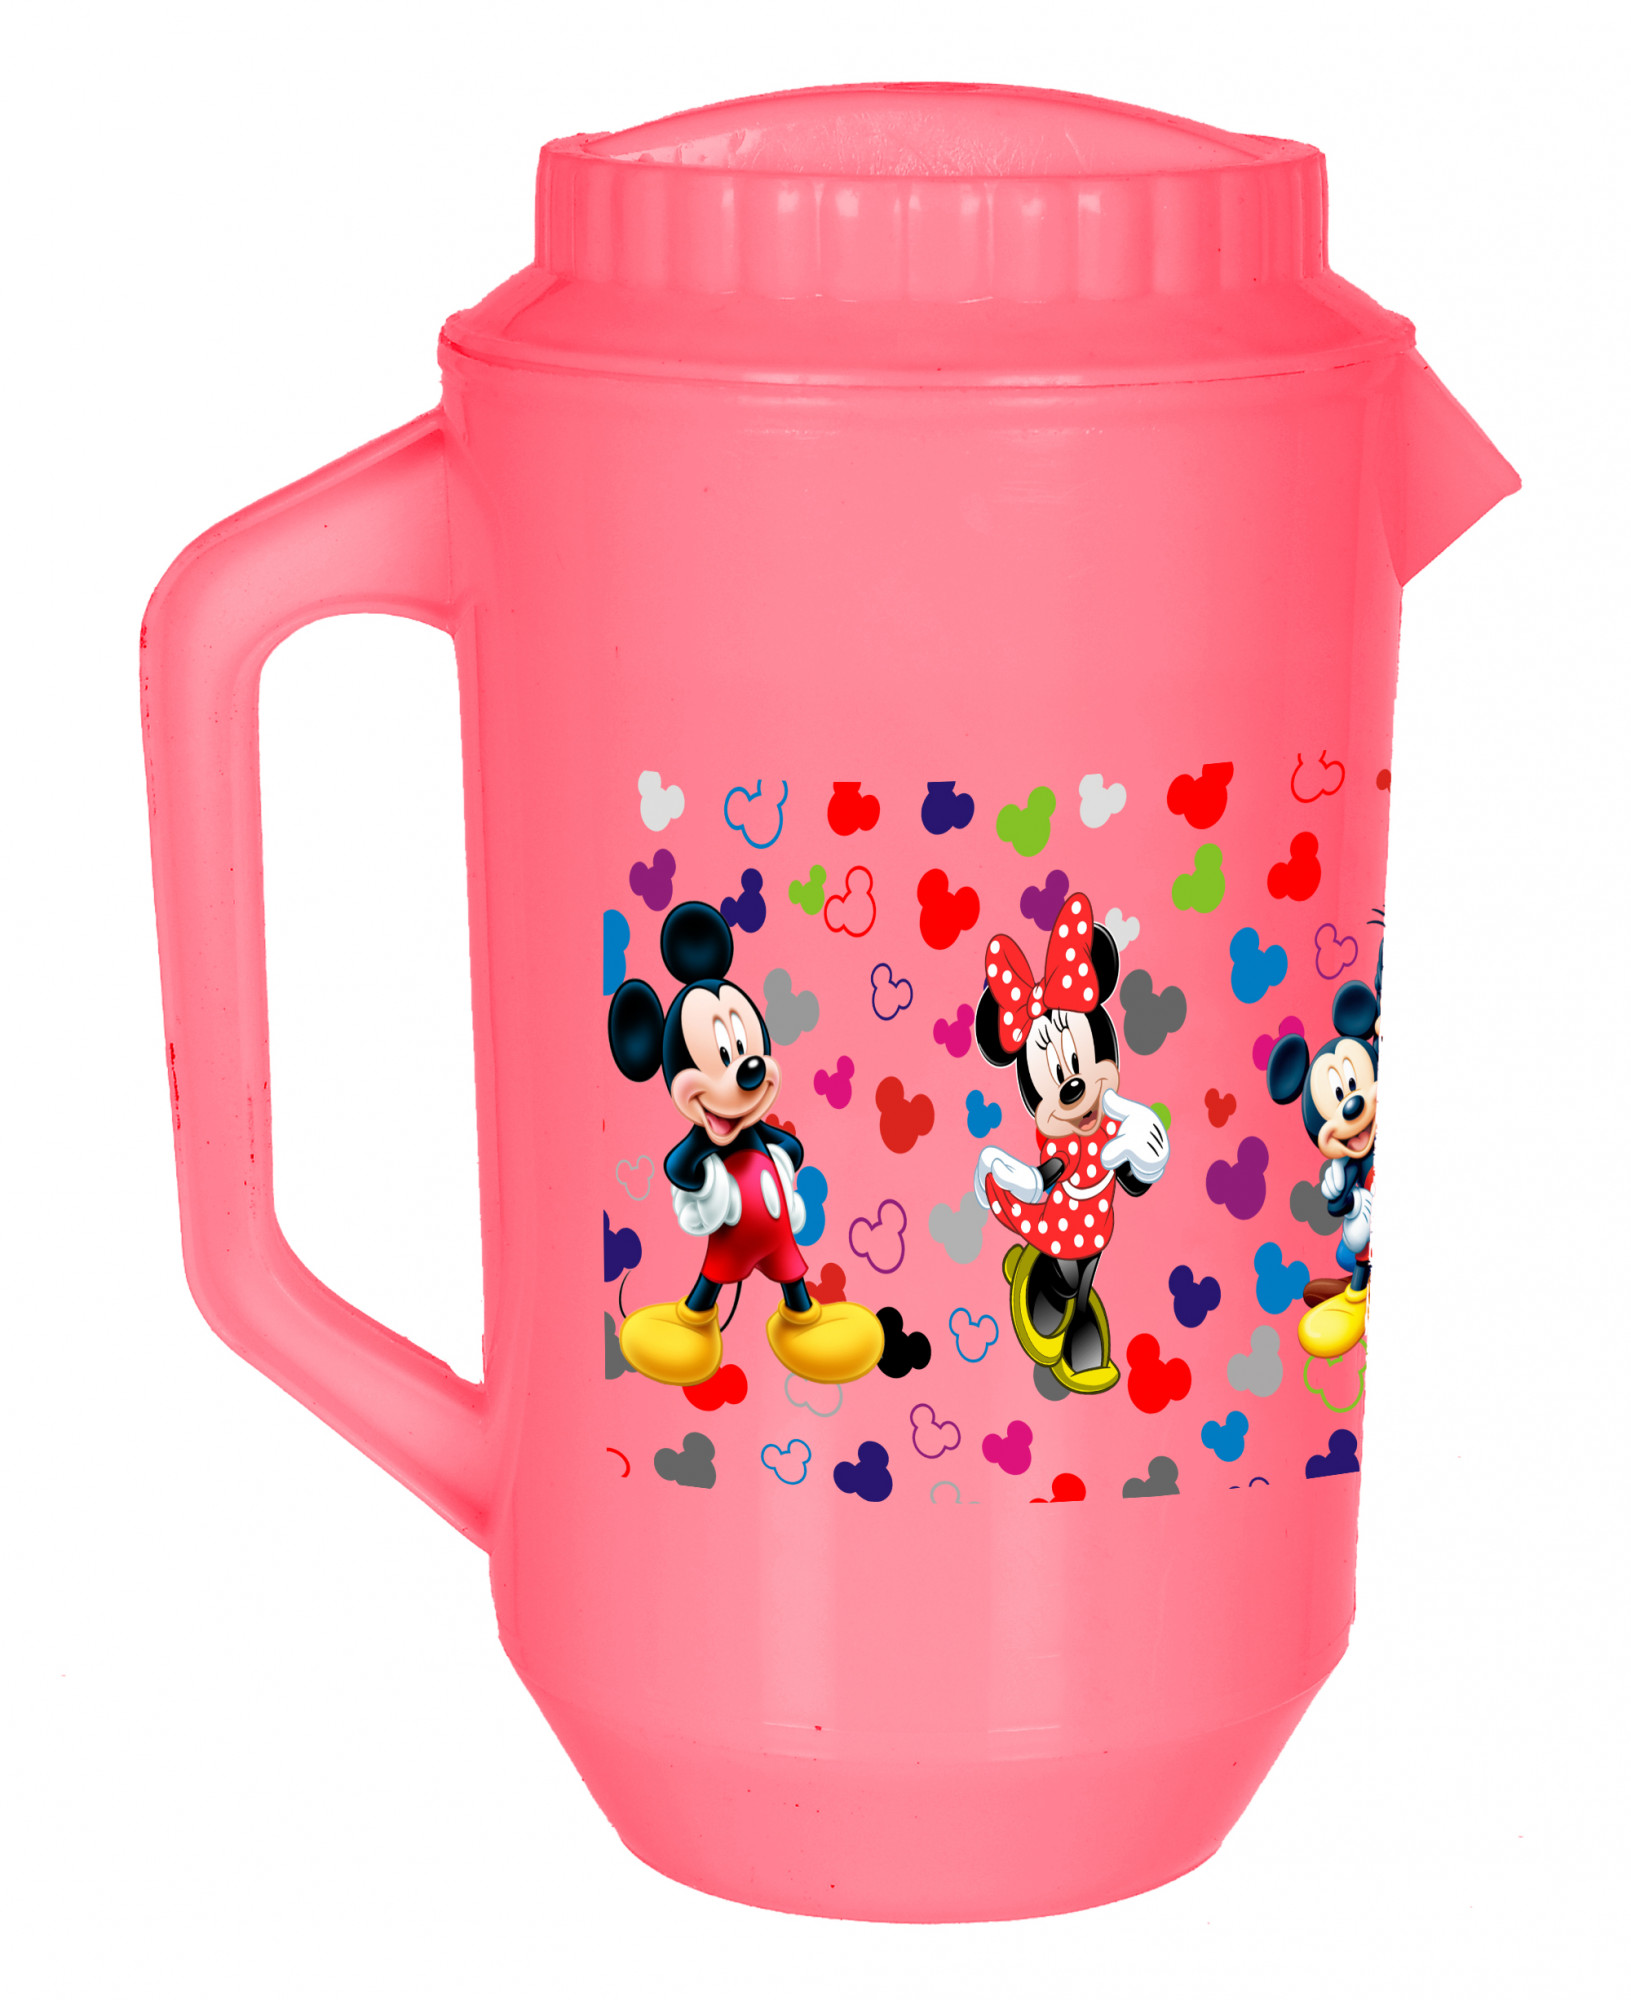 Kuber Industries Disney Team Mickey Print Unbreakable Multipurpose Plastic Water & Juice Jug With Lid,2 Ltr (Set Of 2, Pink & White)